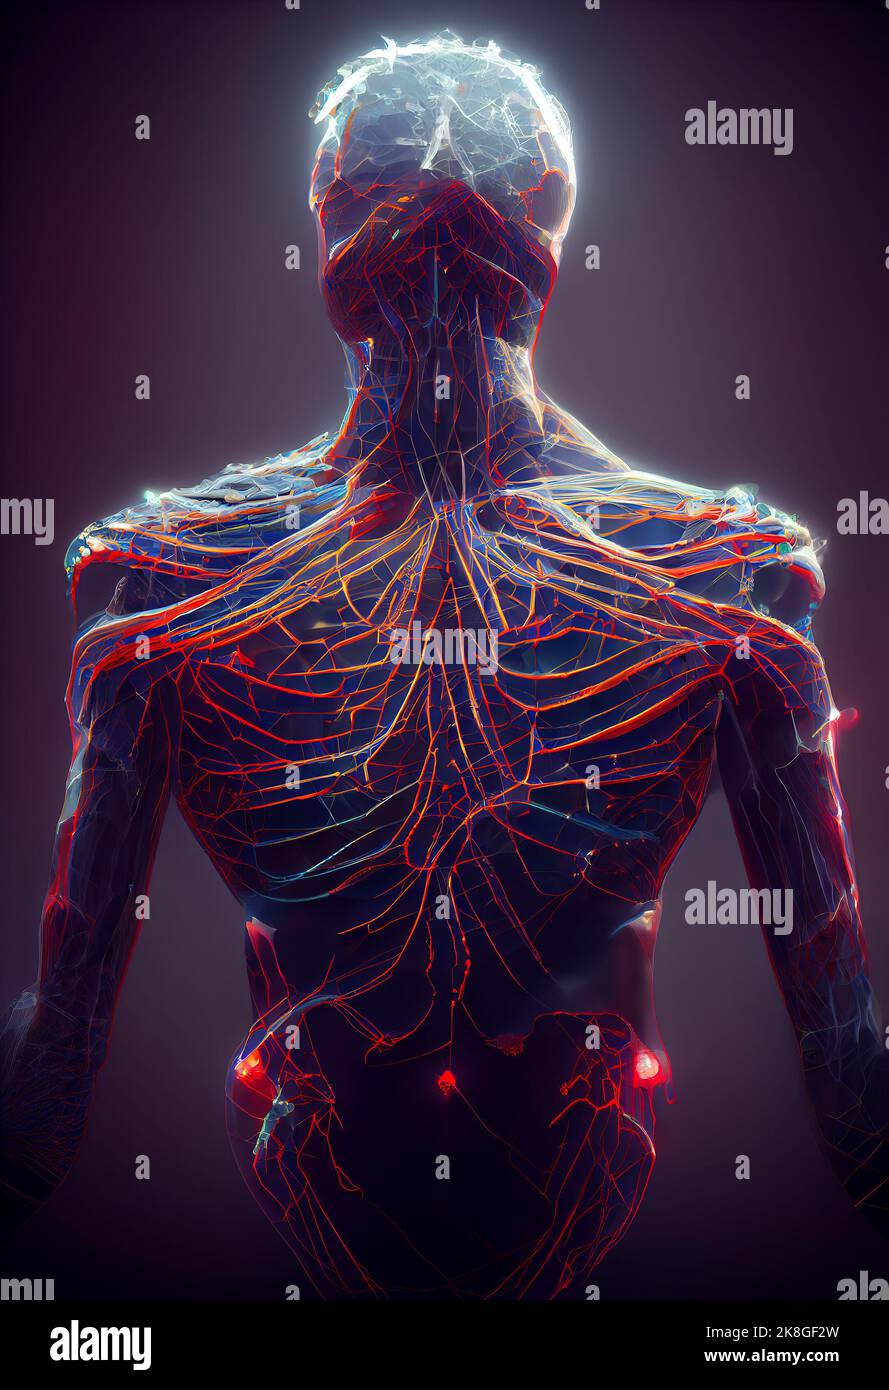 Réseau neuronal humain. Figure humaine neuronale. 3D Illustration numérique. Banque D'Images